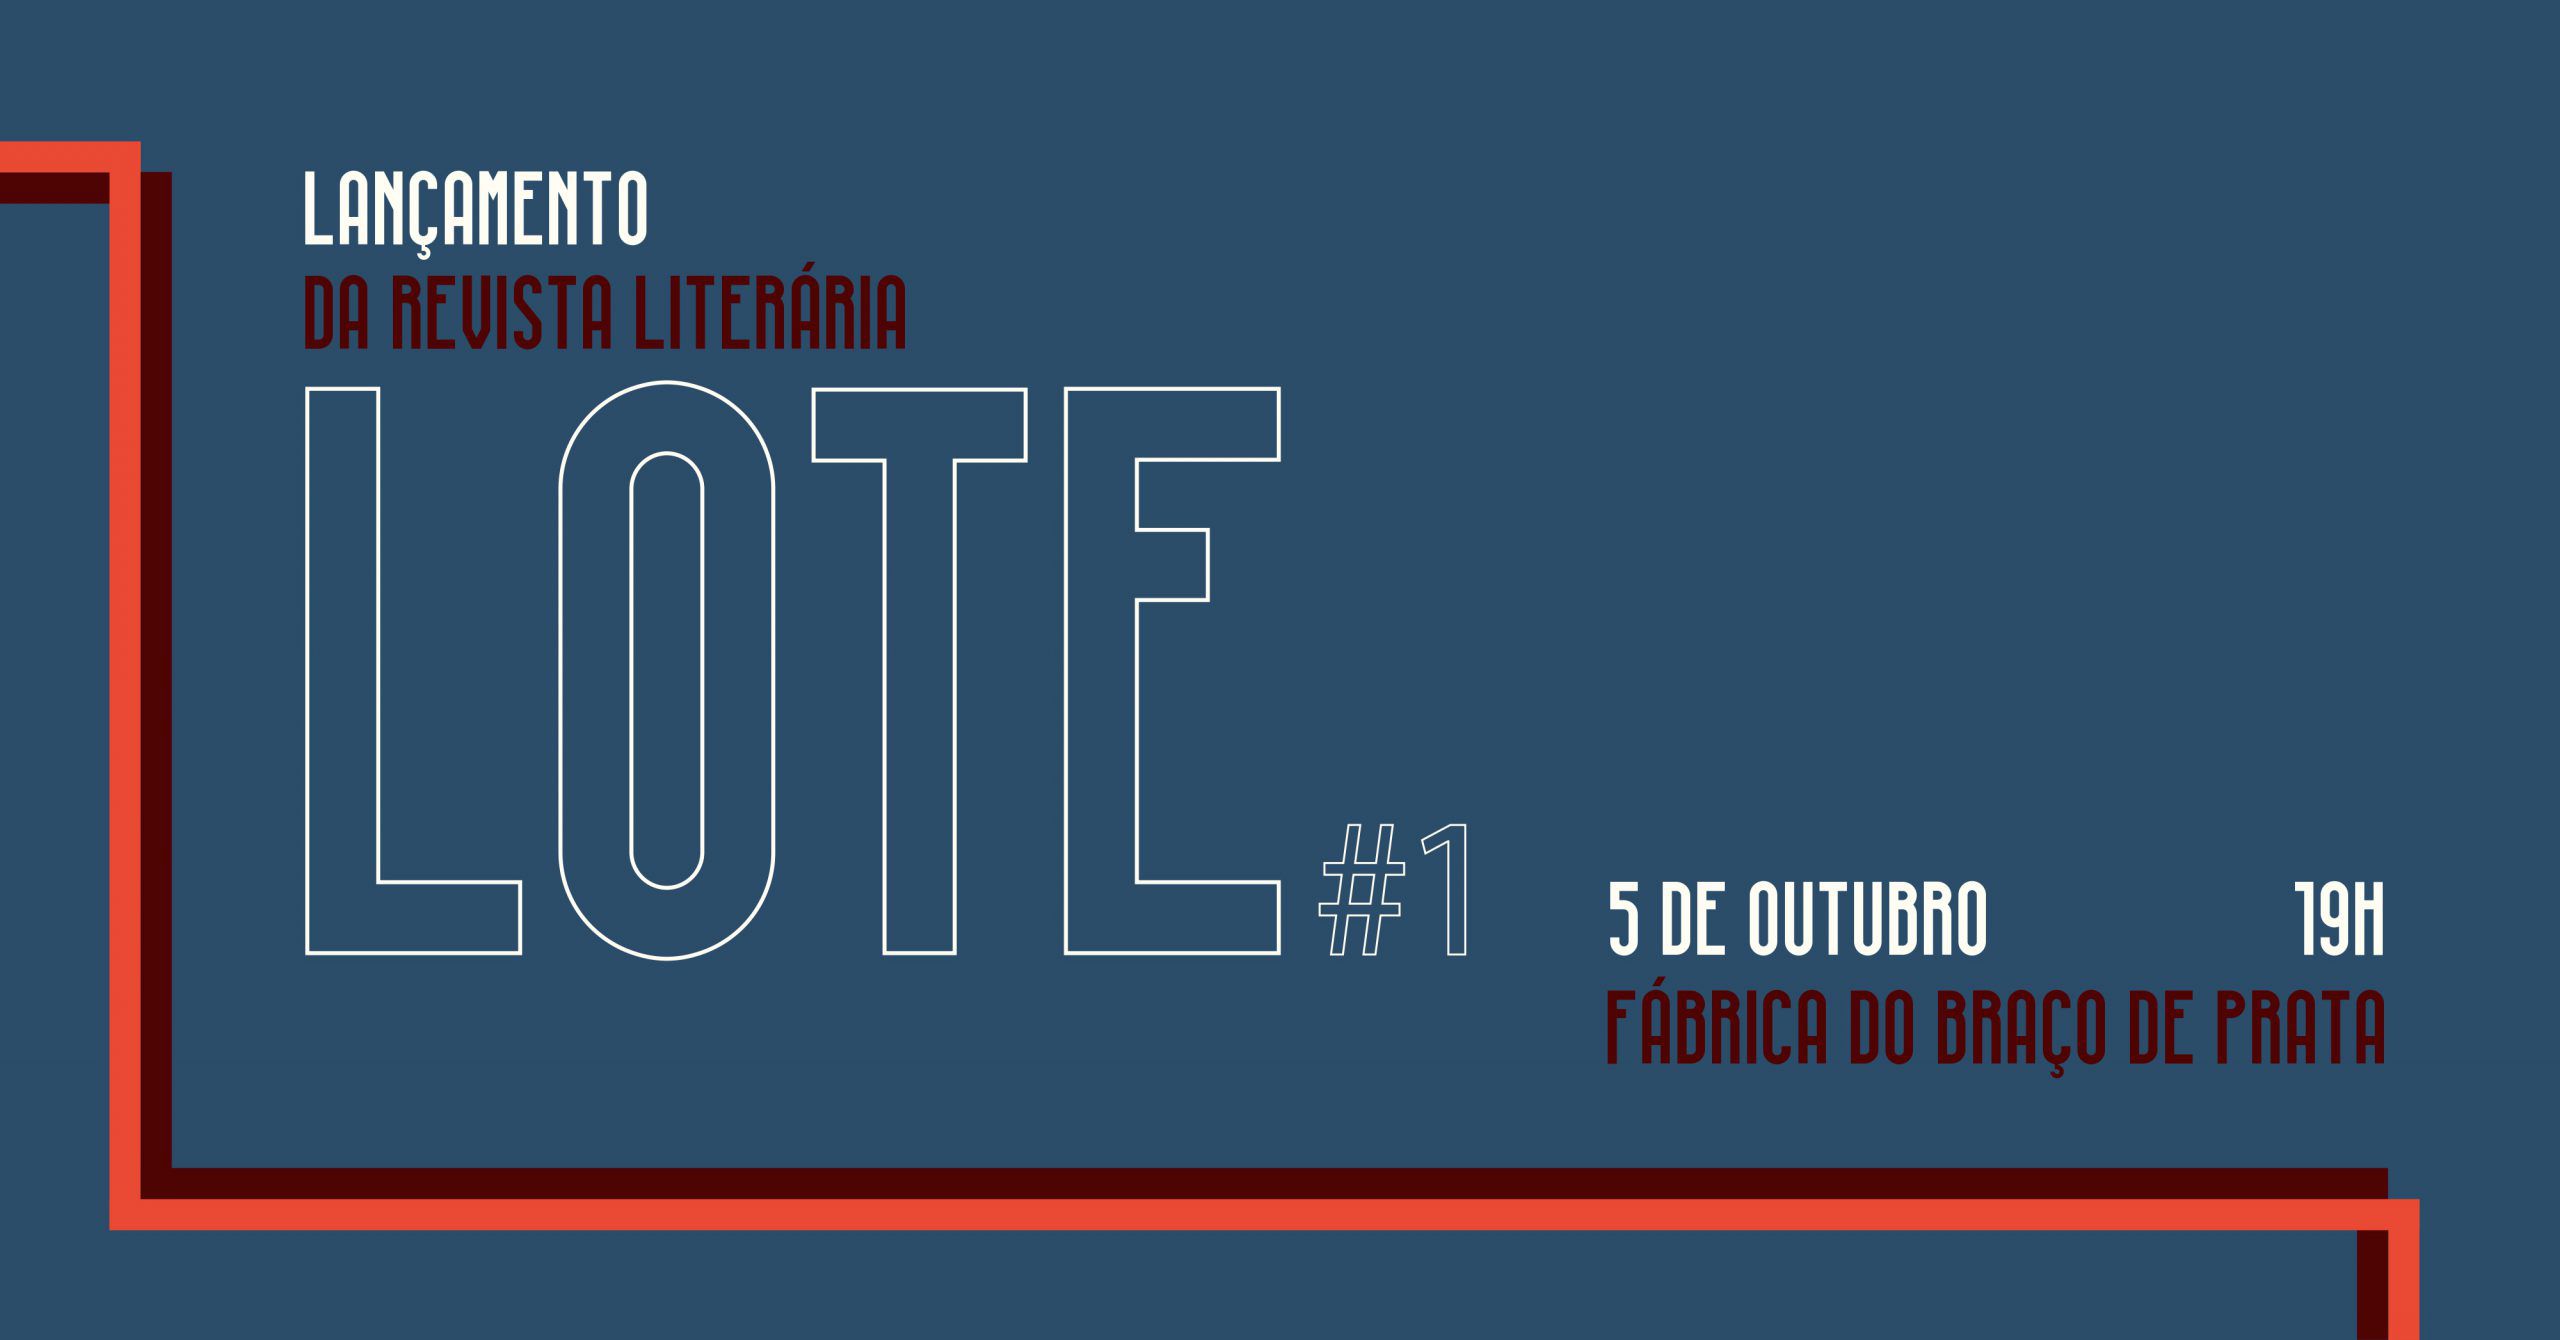 ‘Lote’ é a nova revista literária portuguesa